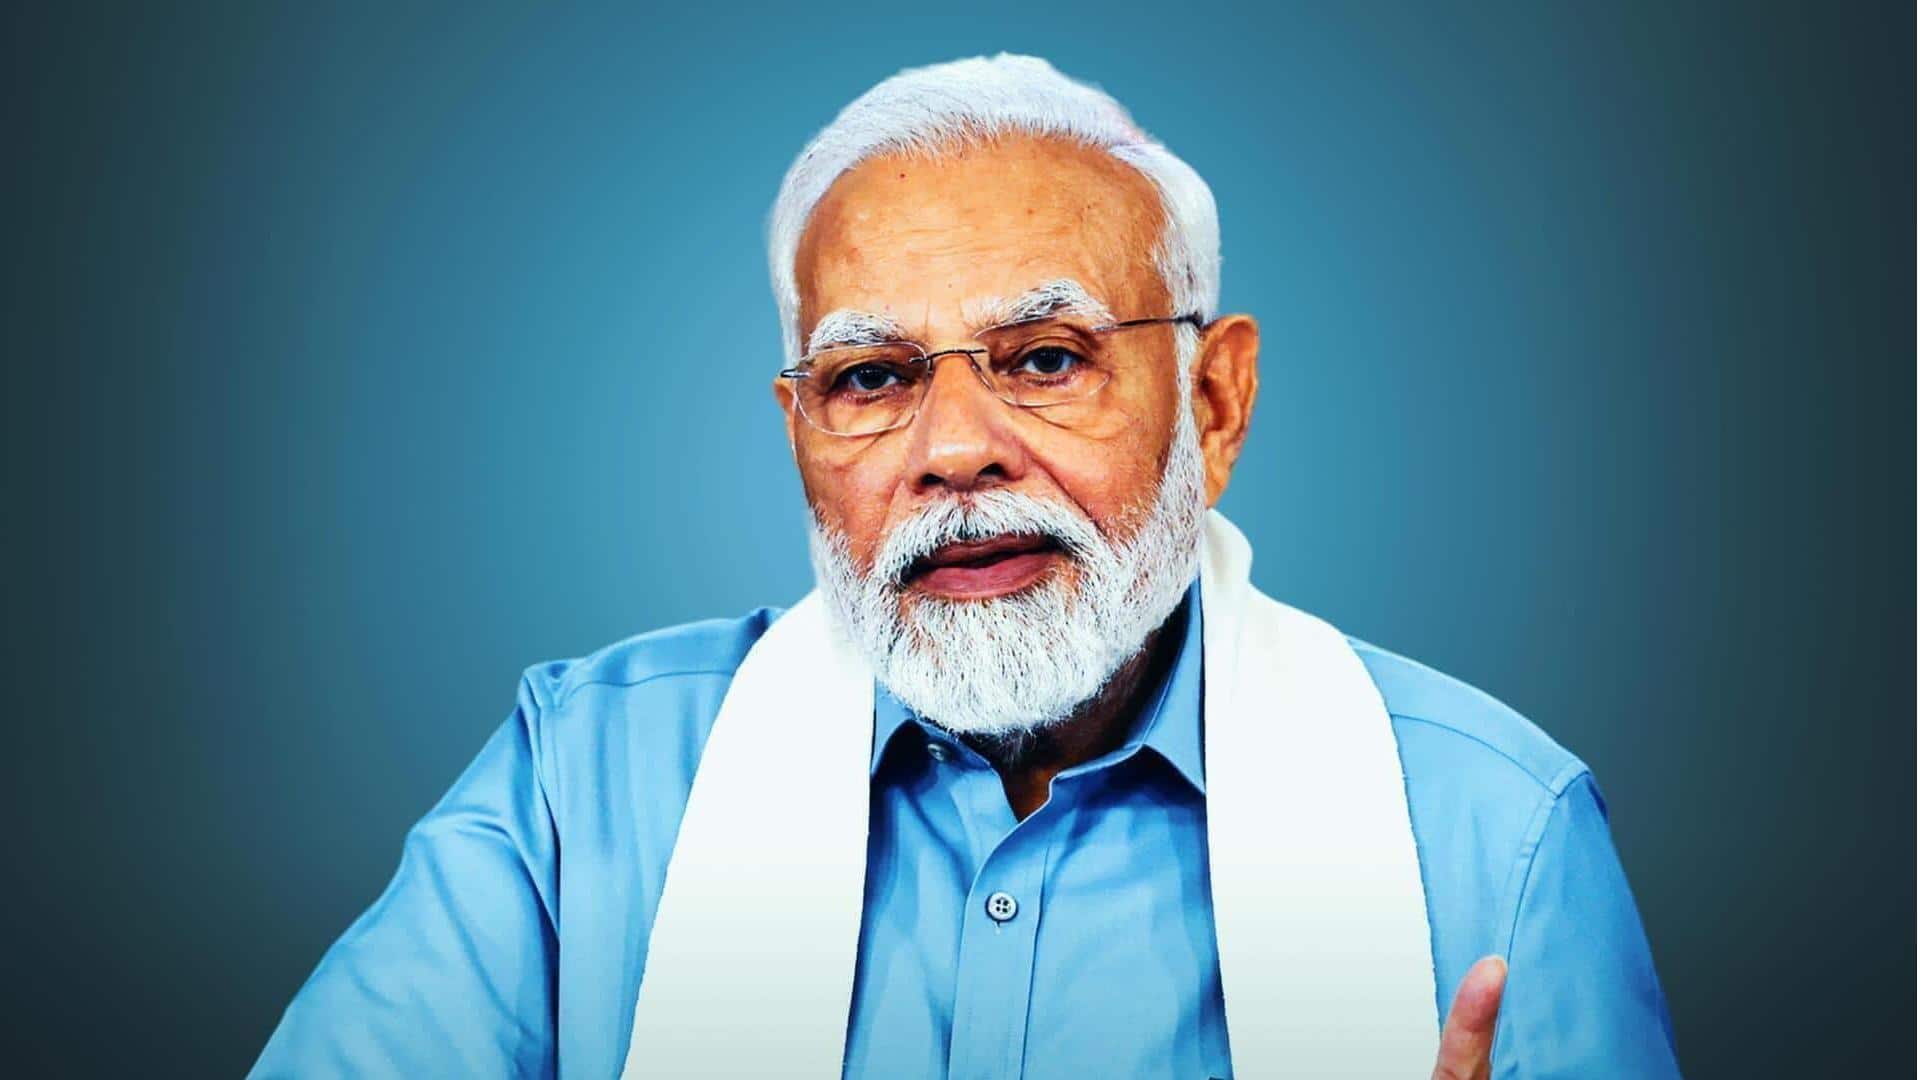 प्रधानमंत्री मोदी जीत को लेकर आश्वस्त, मंत्रियों को दिया नई सरकार का रोडमैप बनाने का निर्देश